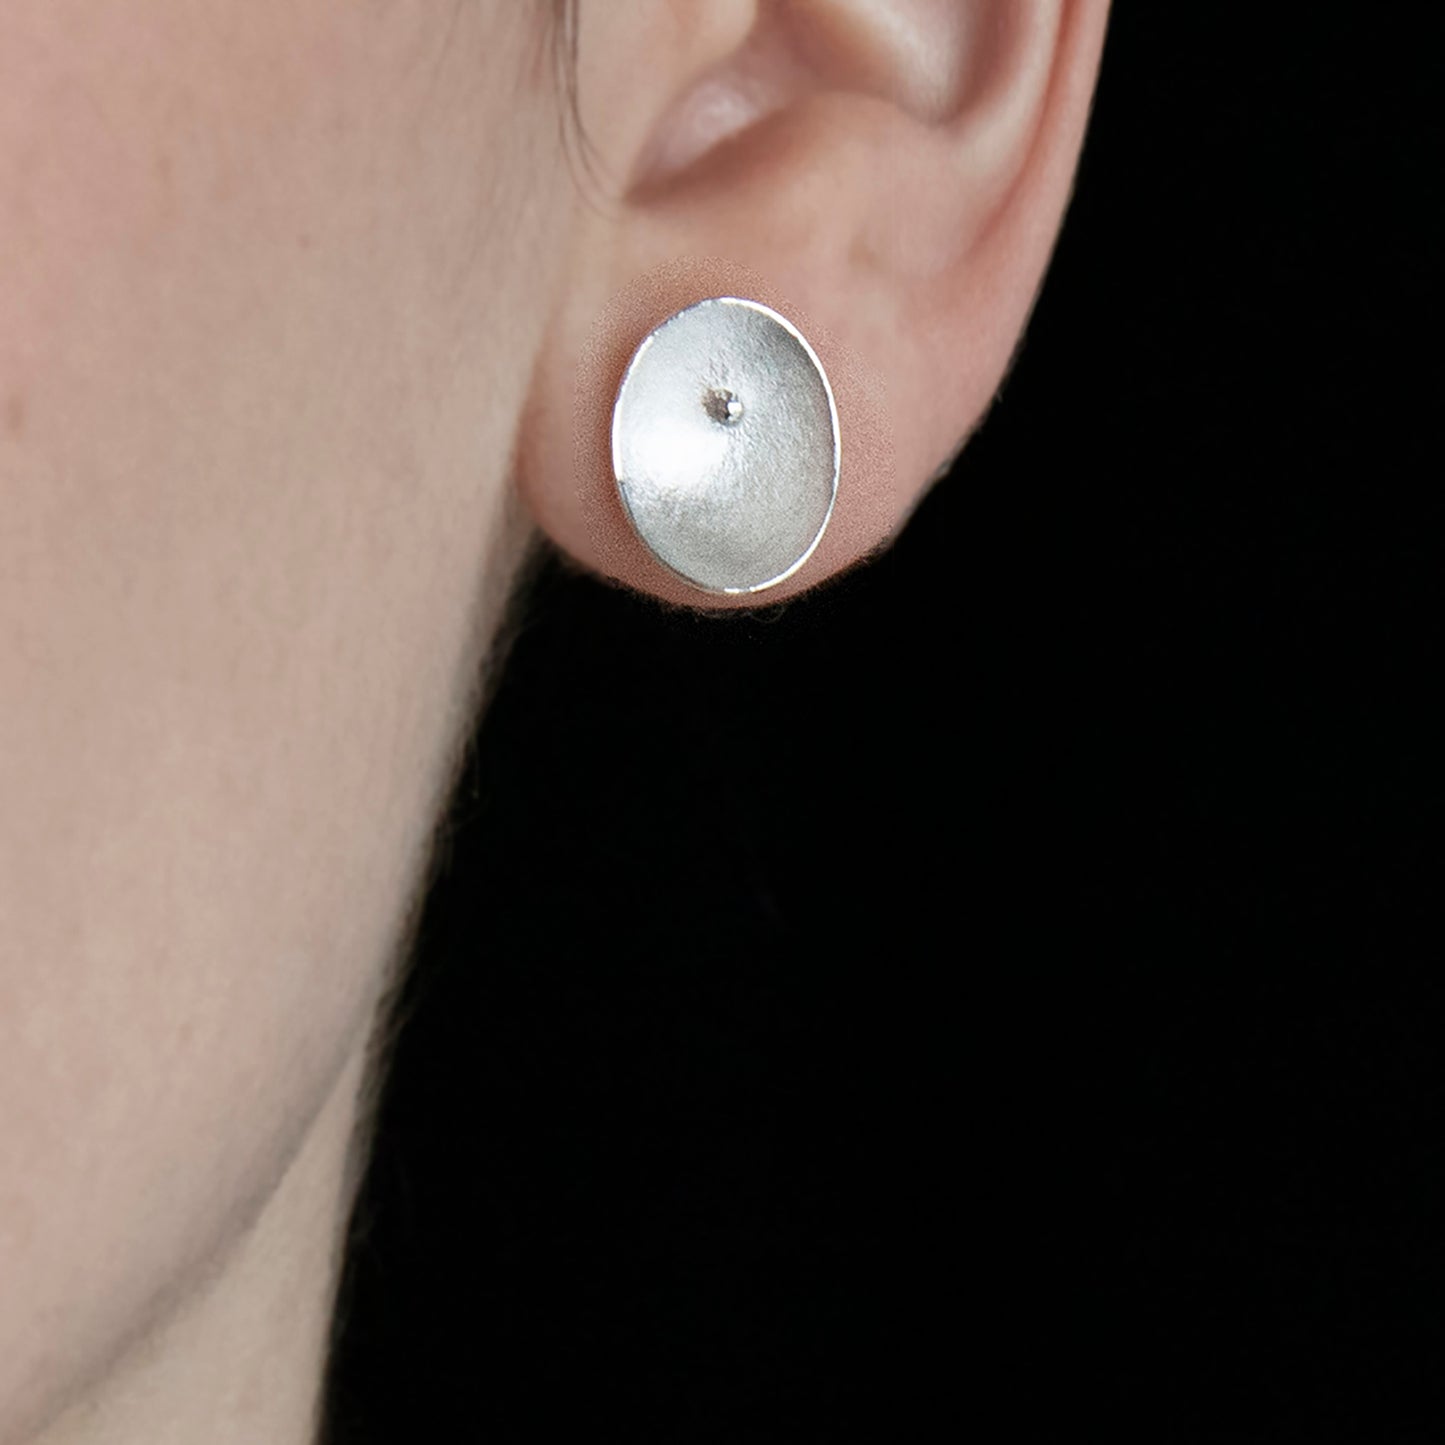 Large Silver Seed Stud Earrings